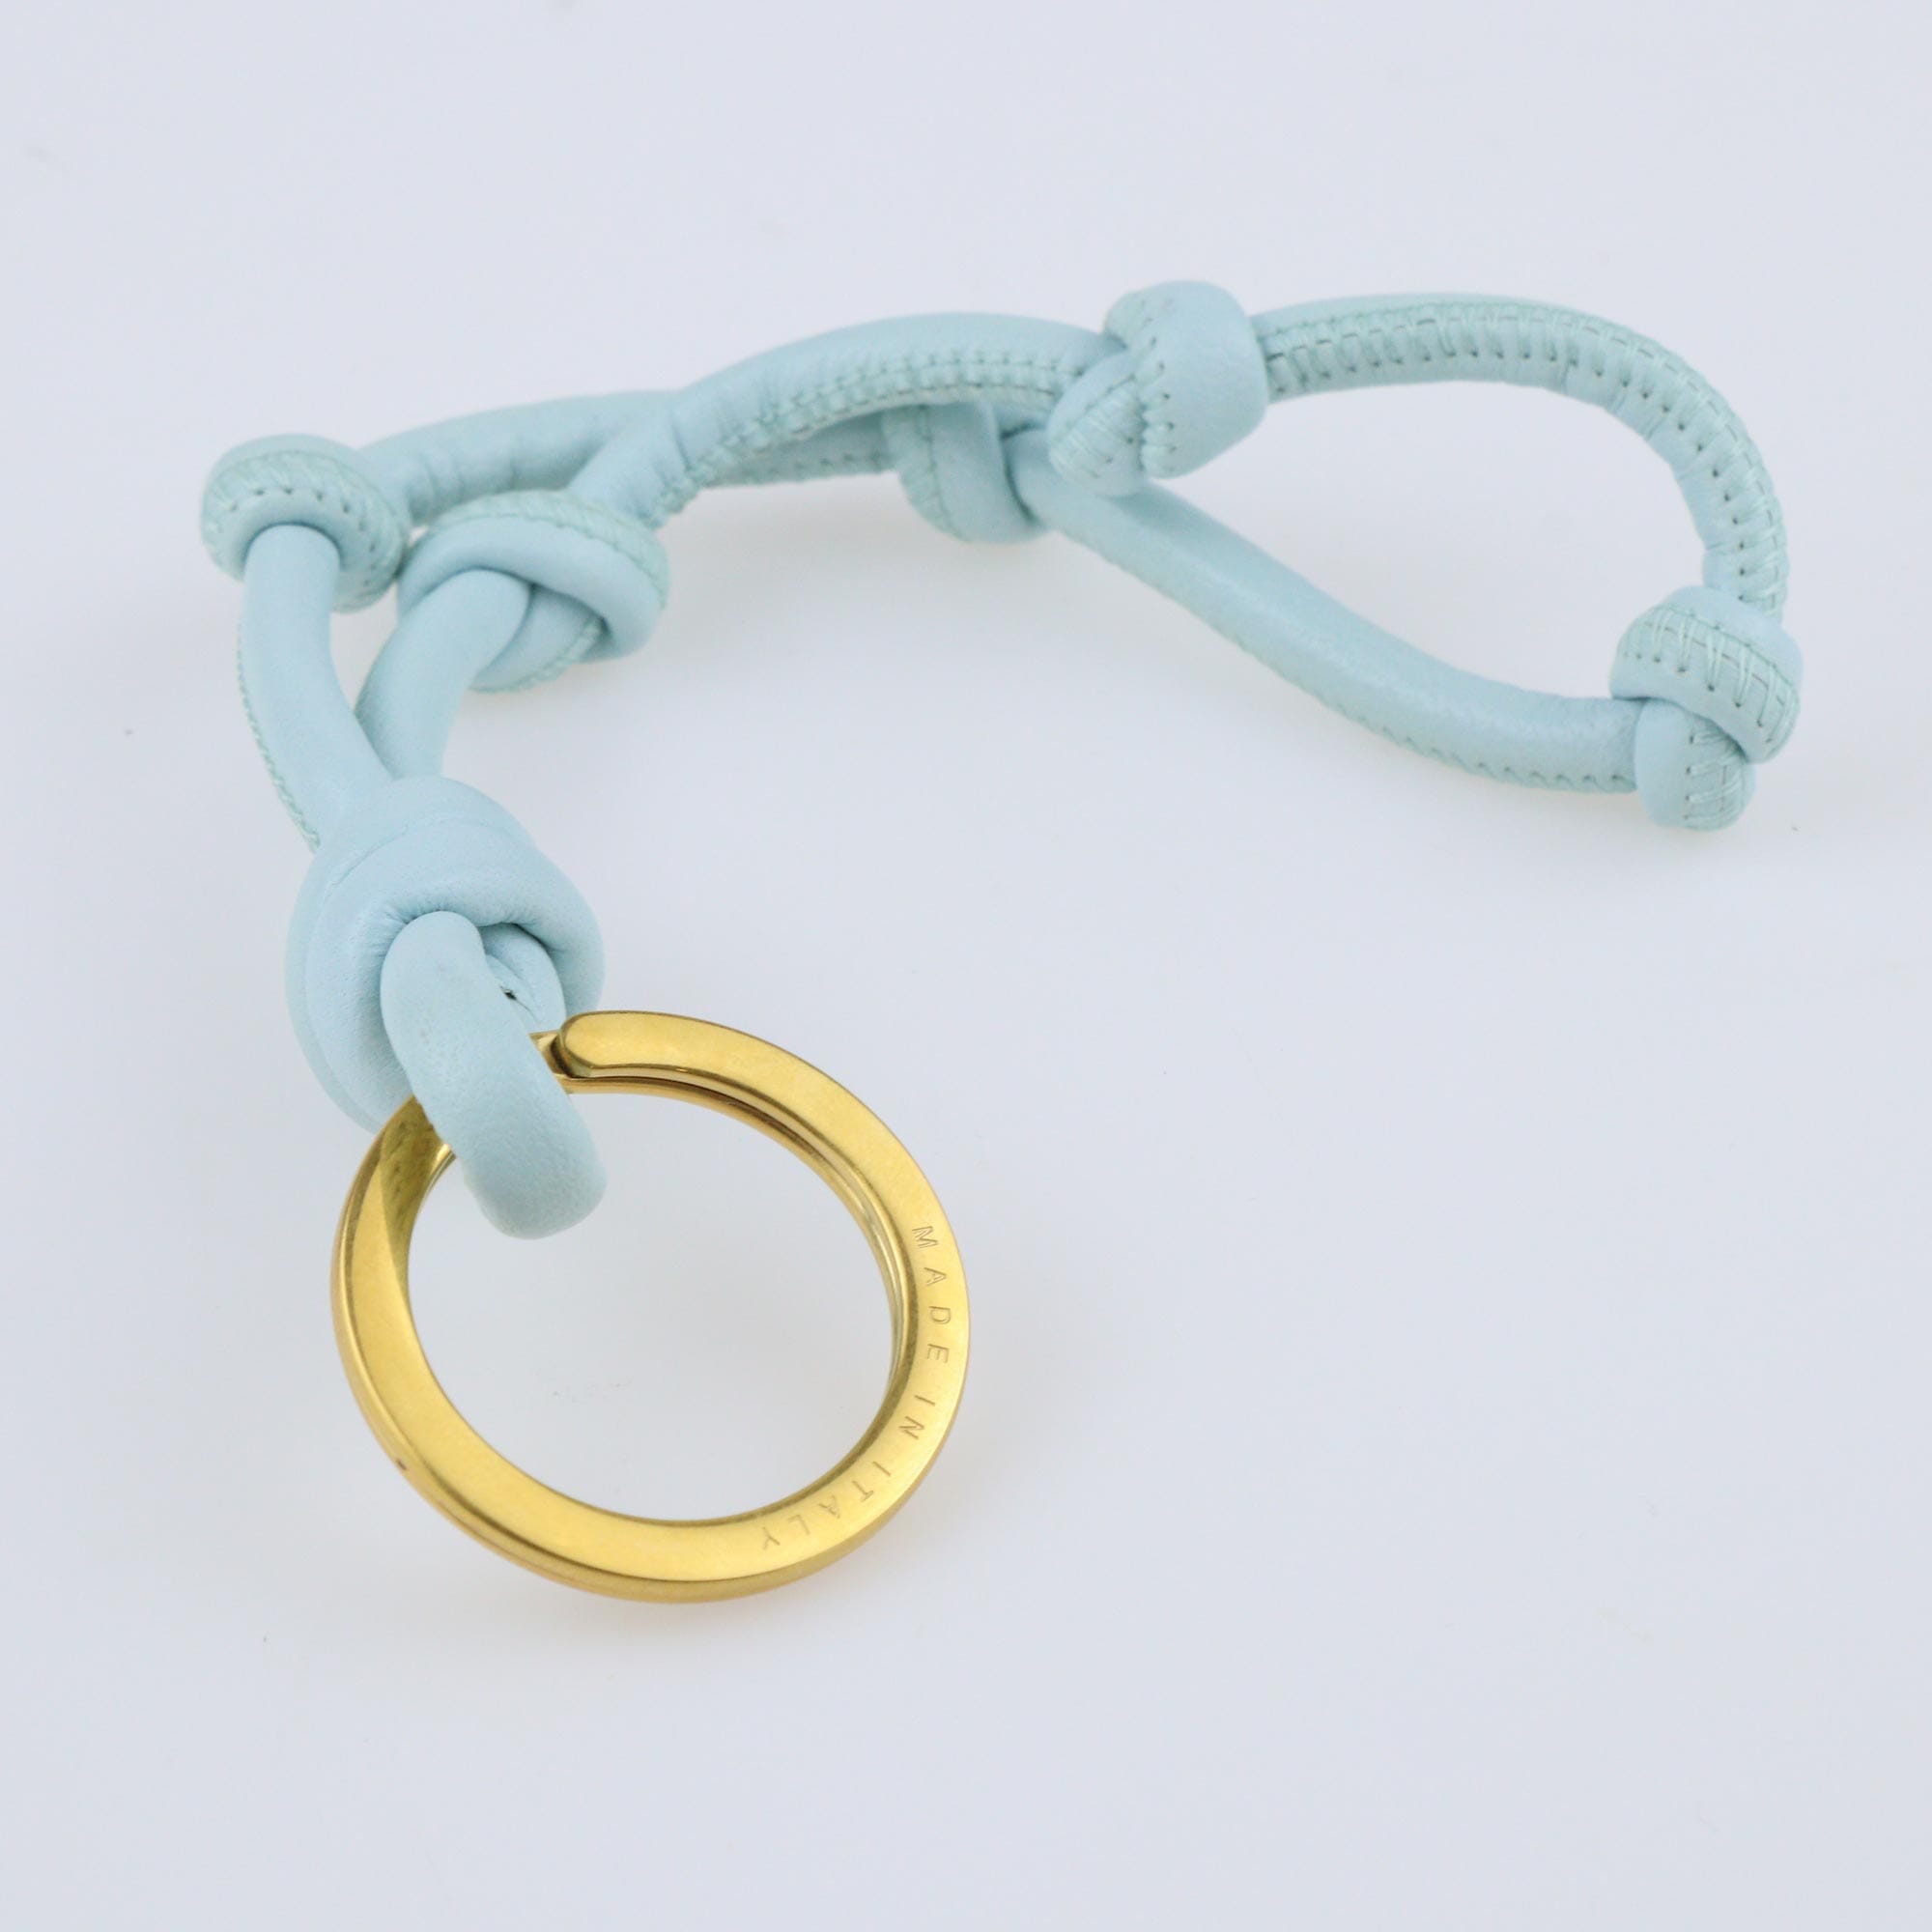 Light Blue Knot Key Ring Key Chain Bottega Veneta 